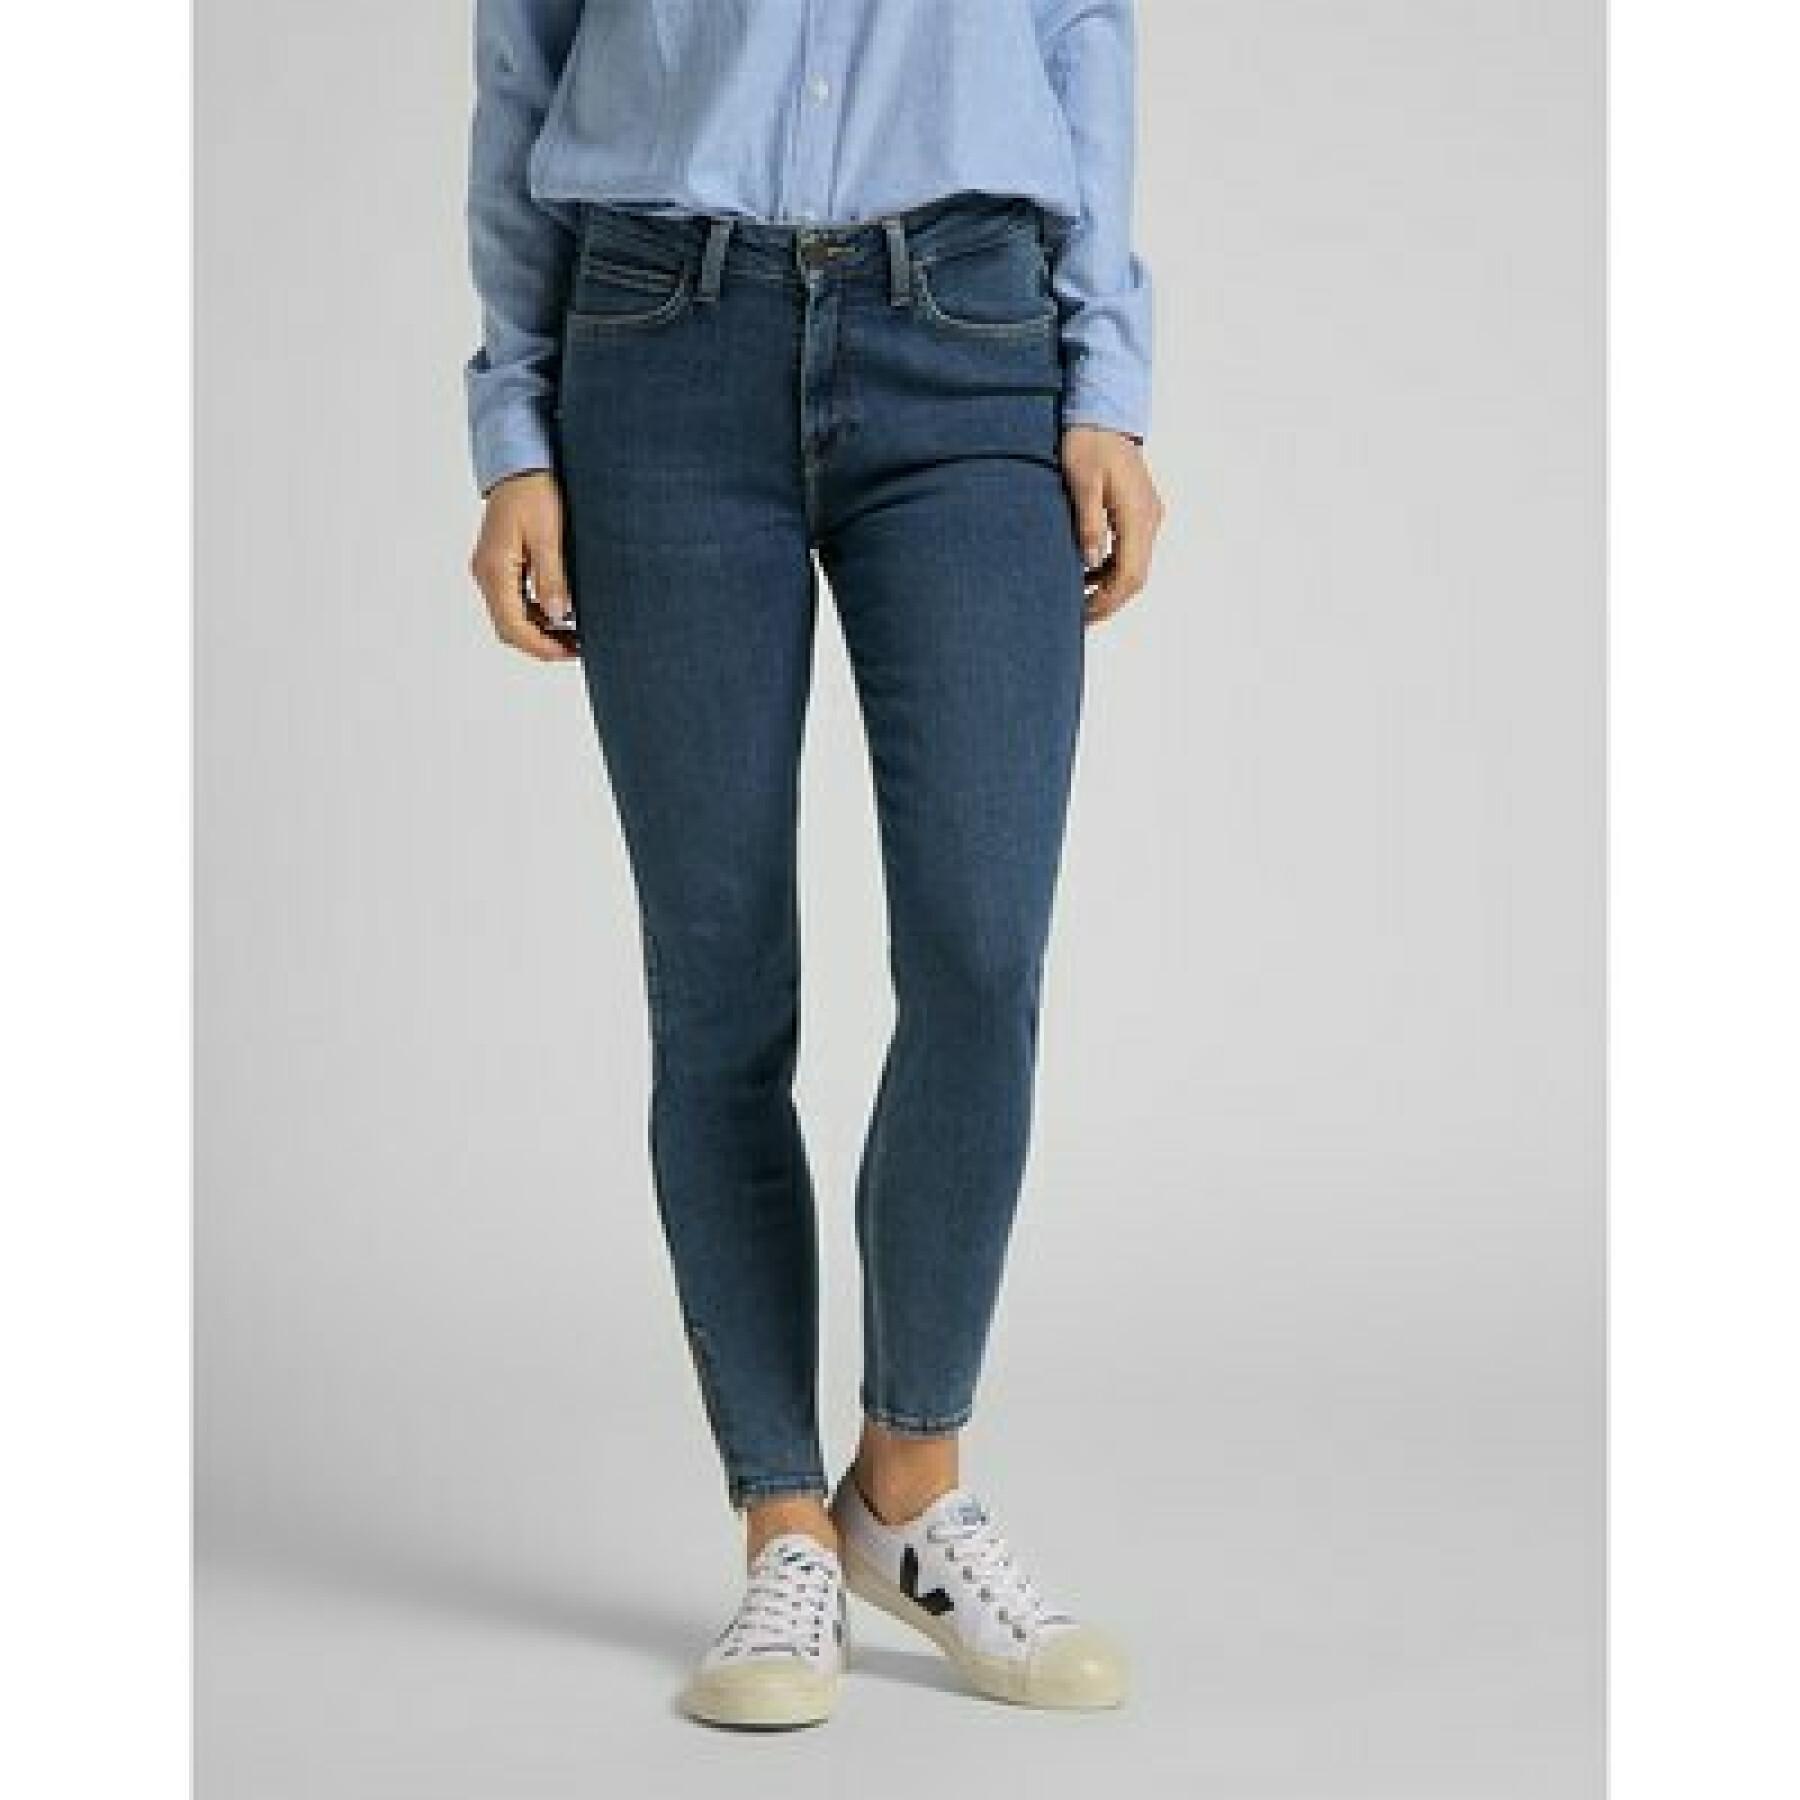 Women's jeans Lee Scarlett High Zip in Mid Ely